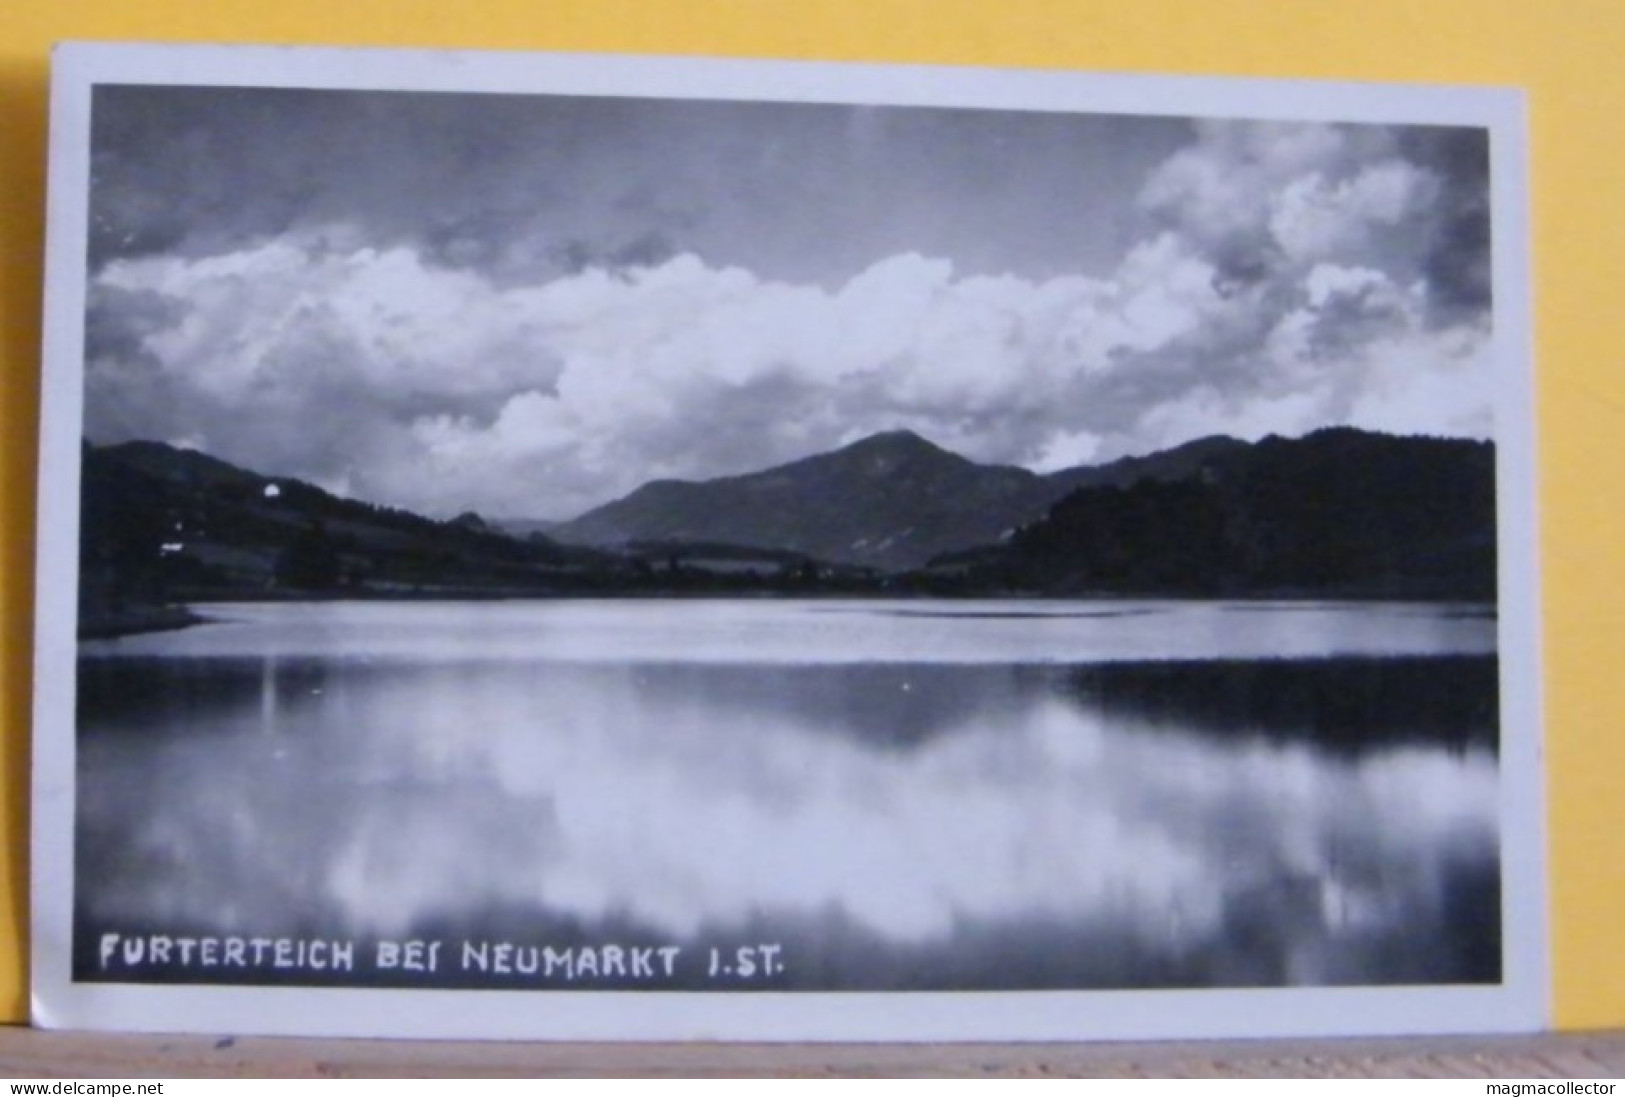 (NEU2) NEUMARKT - FURTERTEICH (FURTER TEICH ) BEI NEUMARKT 1.ST - VIAGGIATA 1928 - Neumarkt